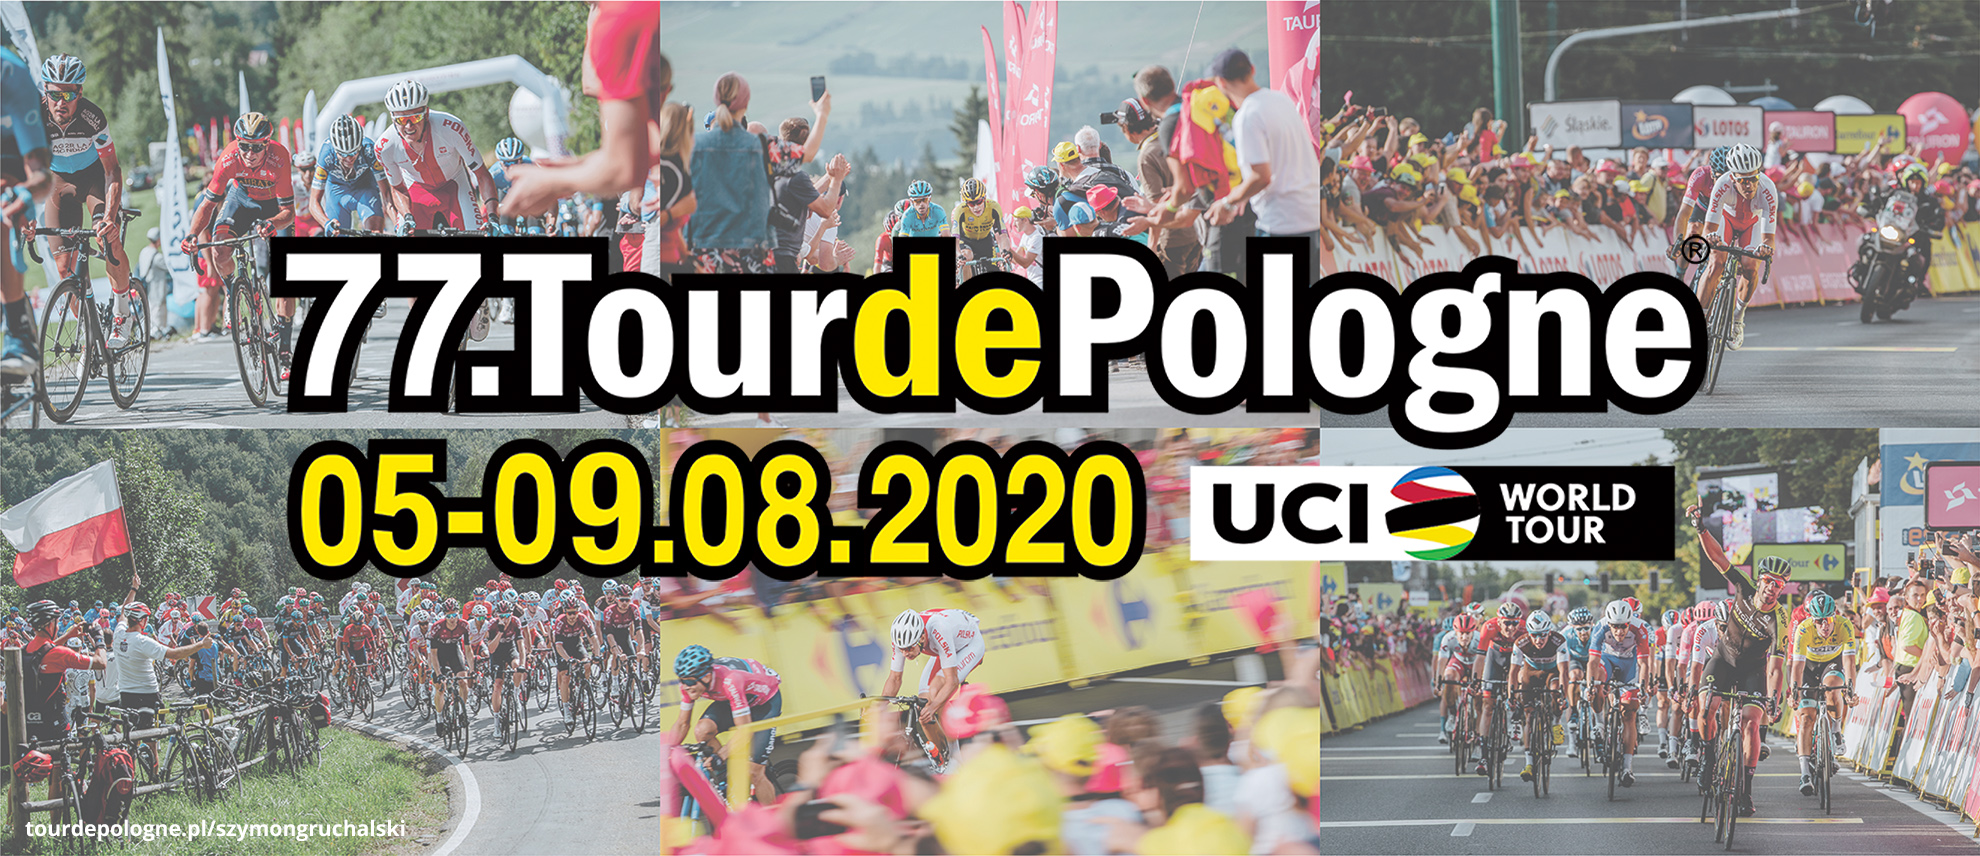 DRUTEX the official sponsor of Tour de Pologne